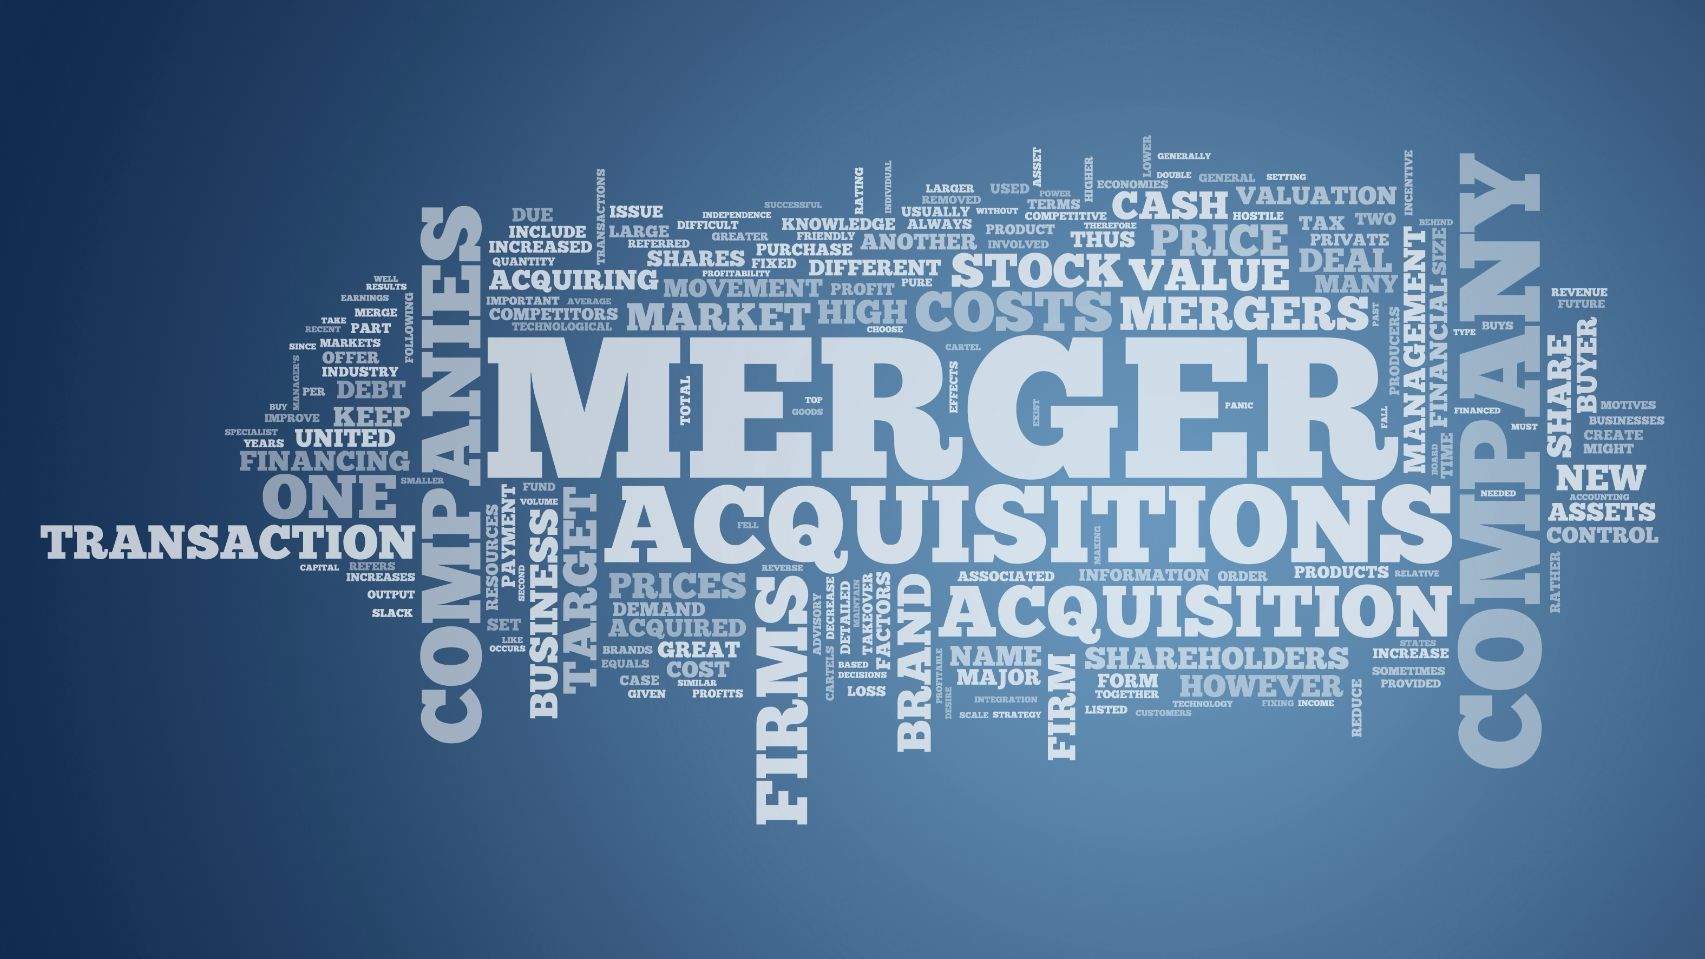 Merger & Acquisition